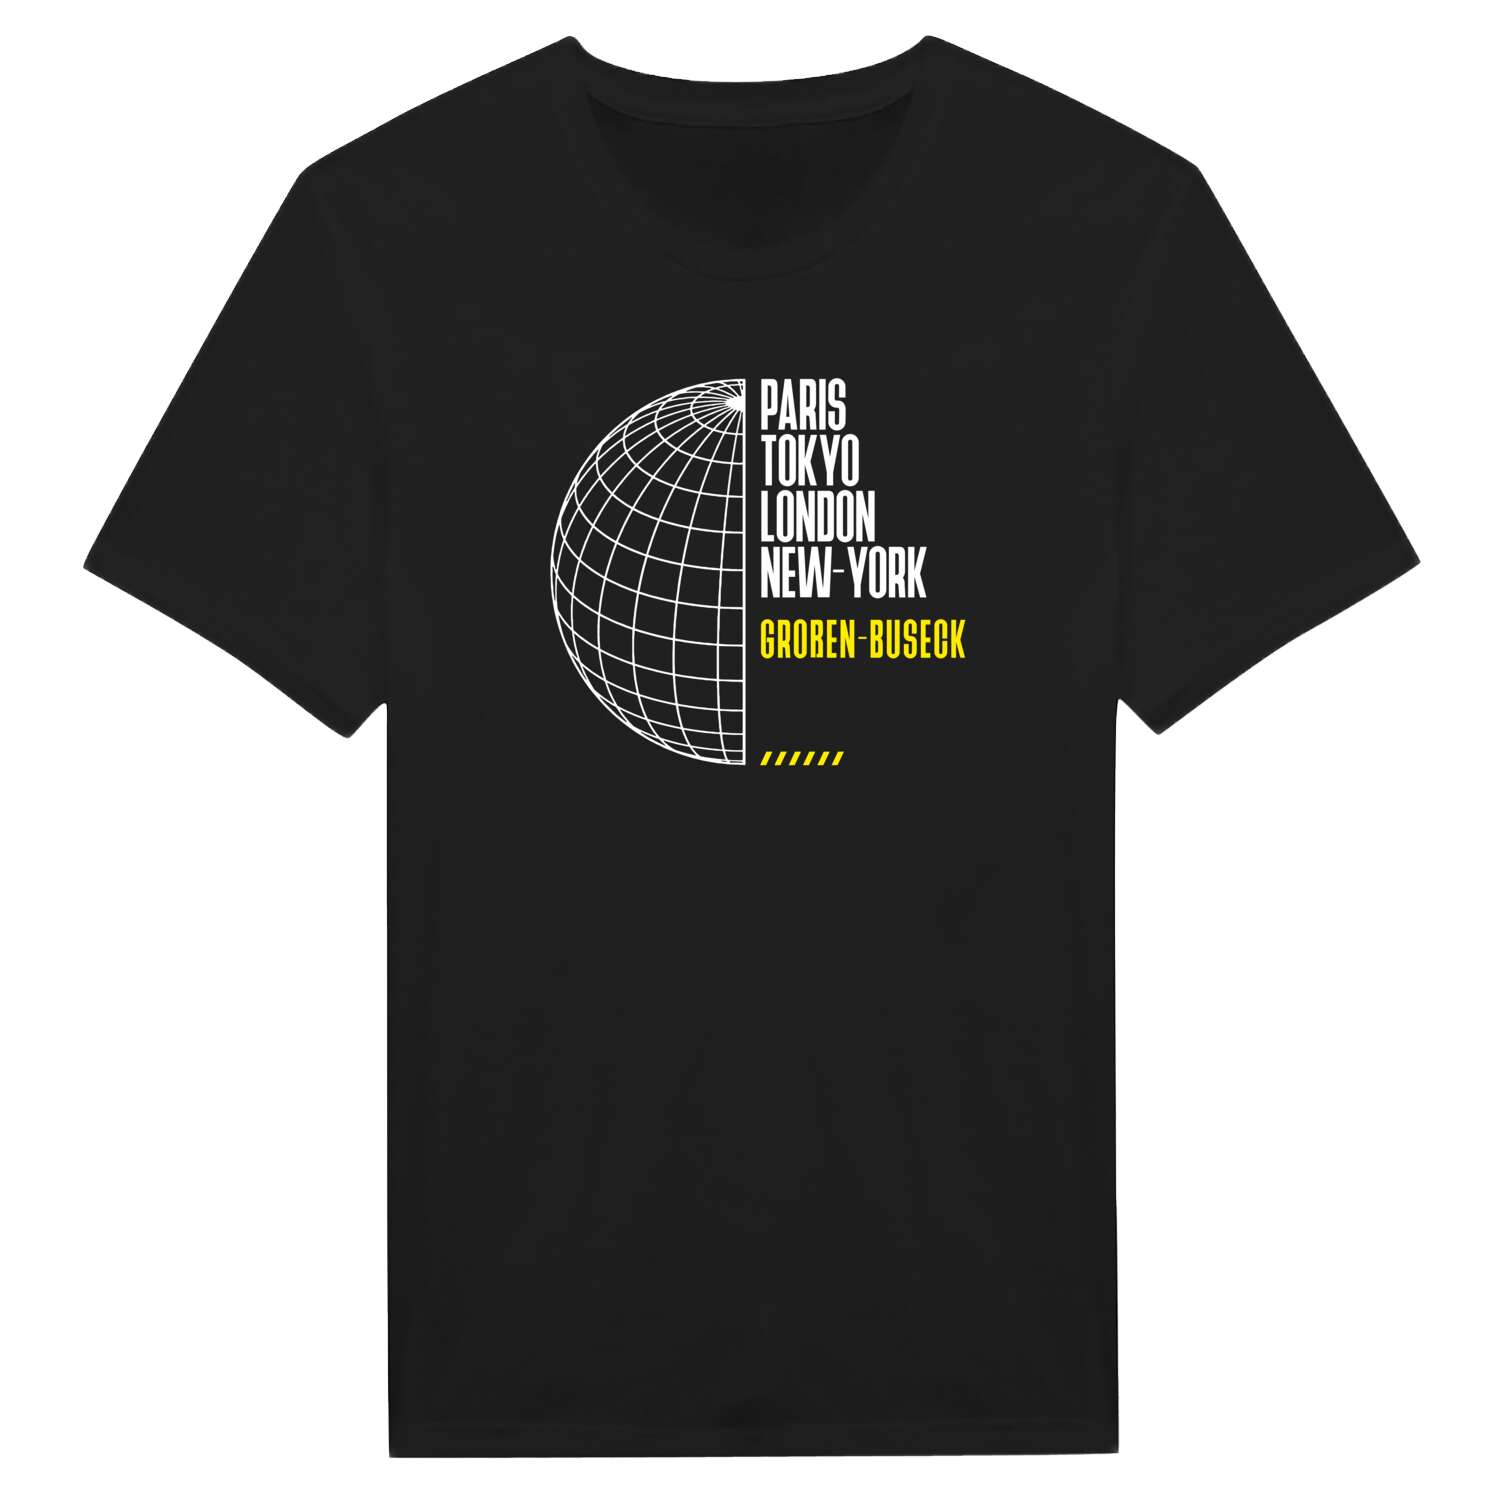 Großen-Buseck T-Shirt »Paris Tokyo London«